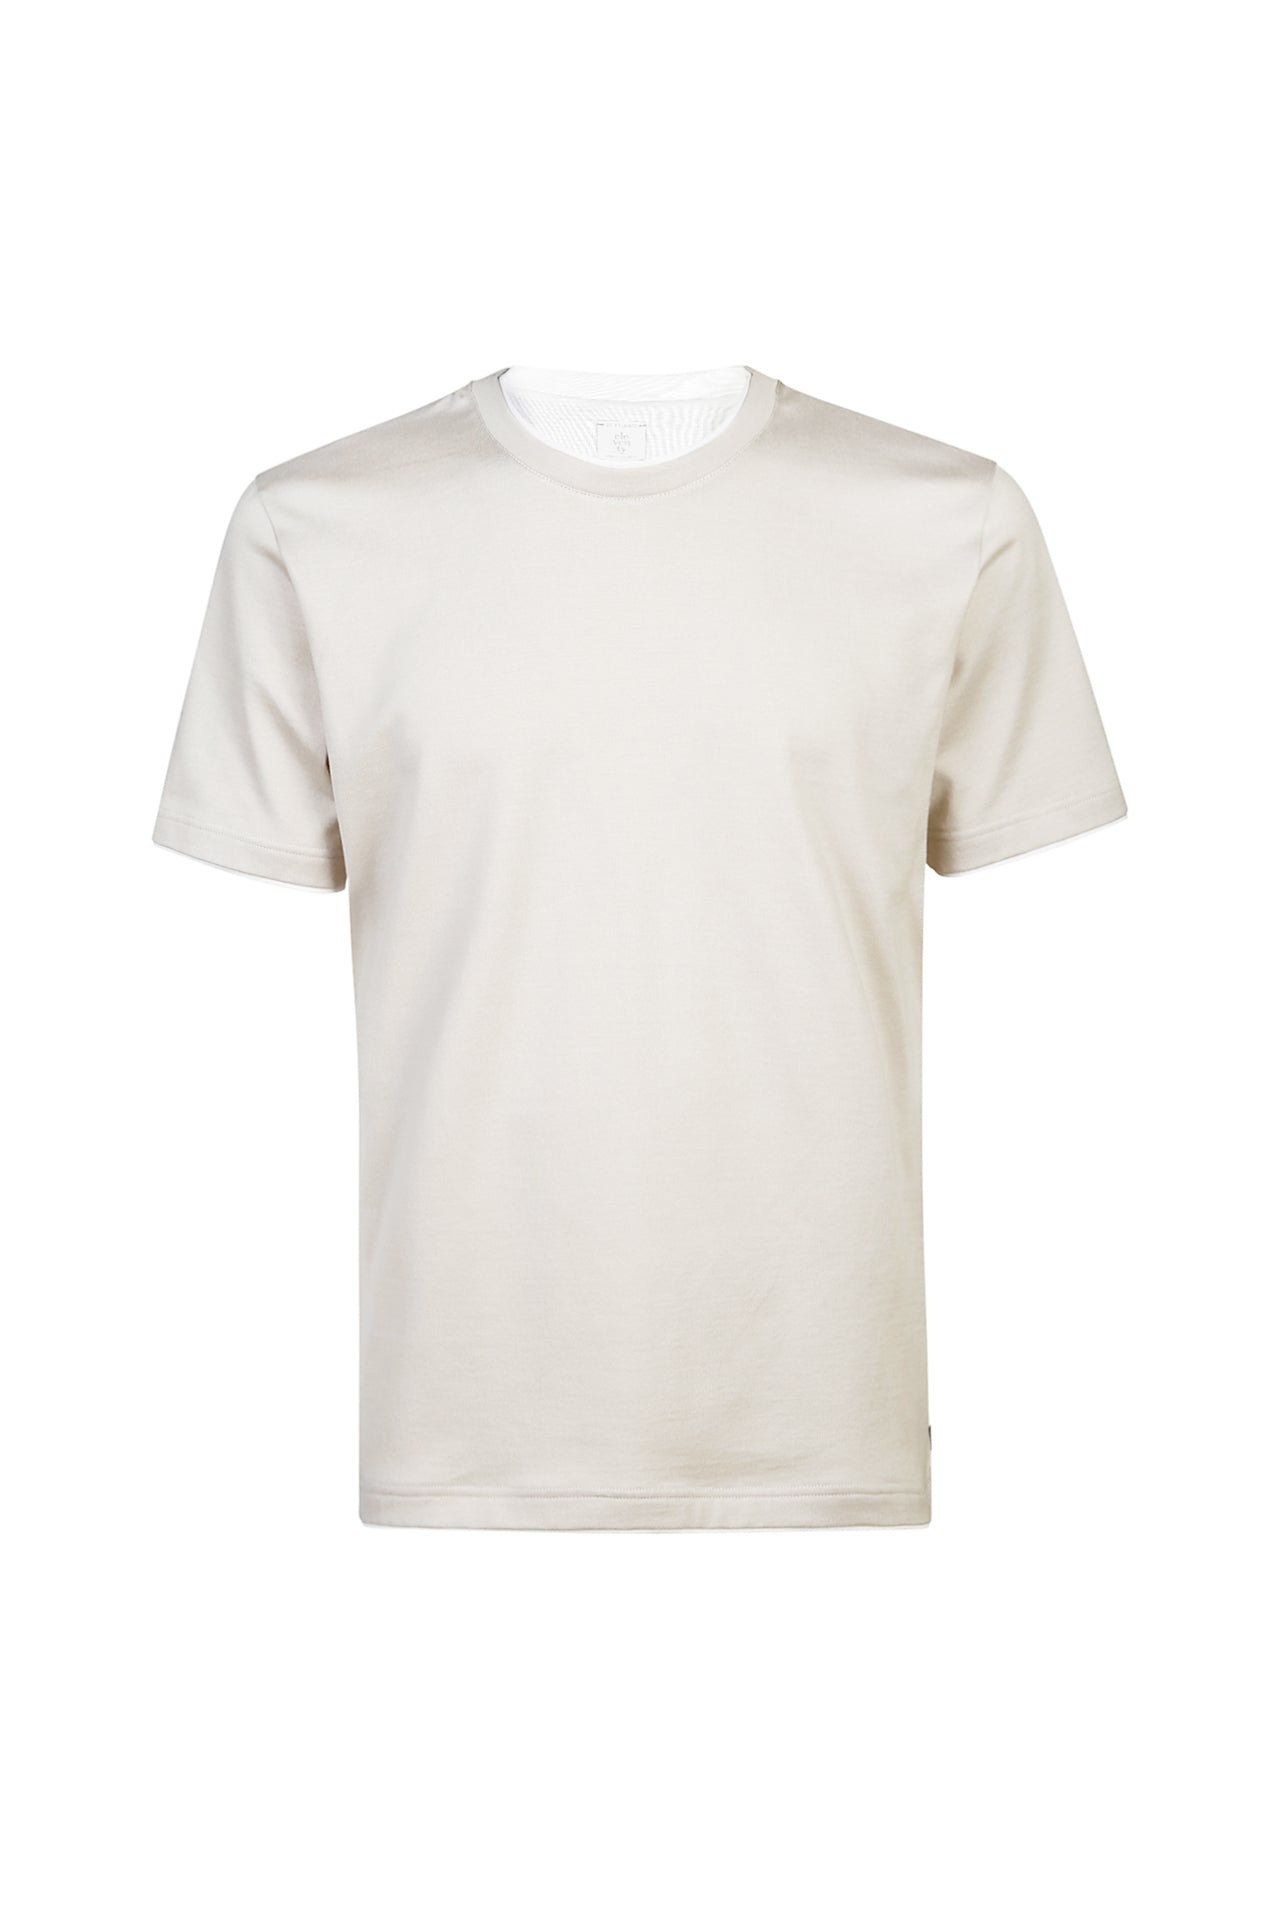 Eleventy T-Shirt Uomo Girocollo-Sabbia